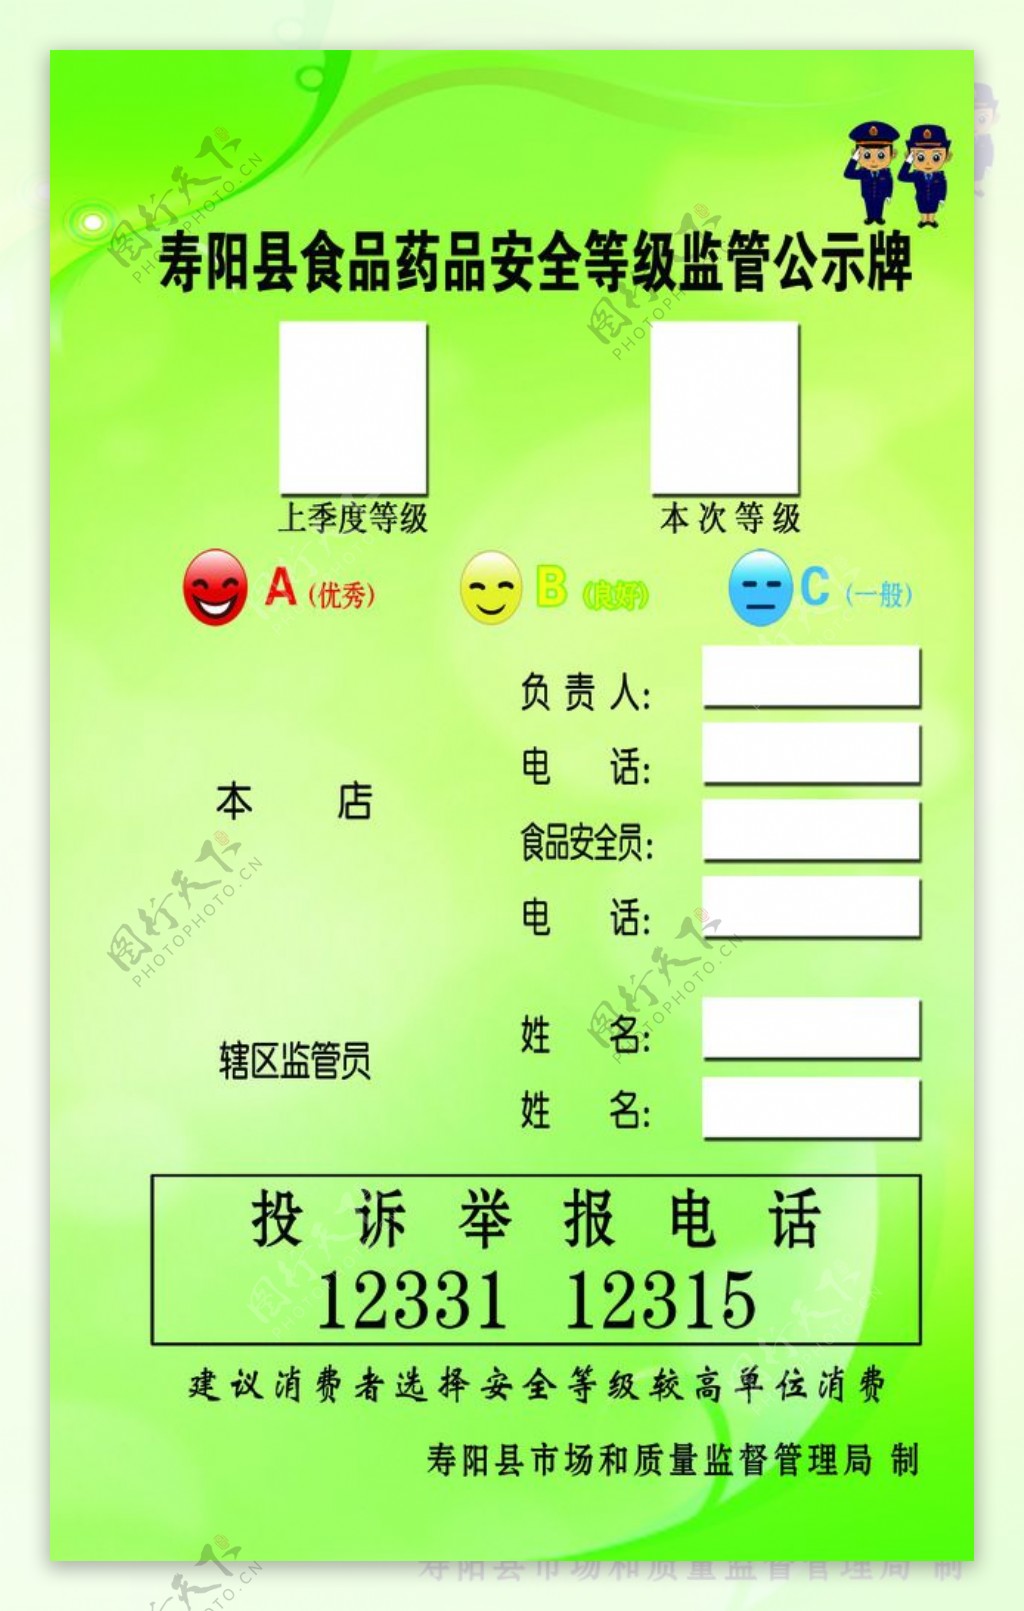 寿阳县食品药品安全等级监管公示